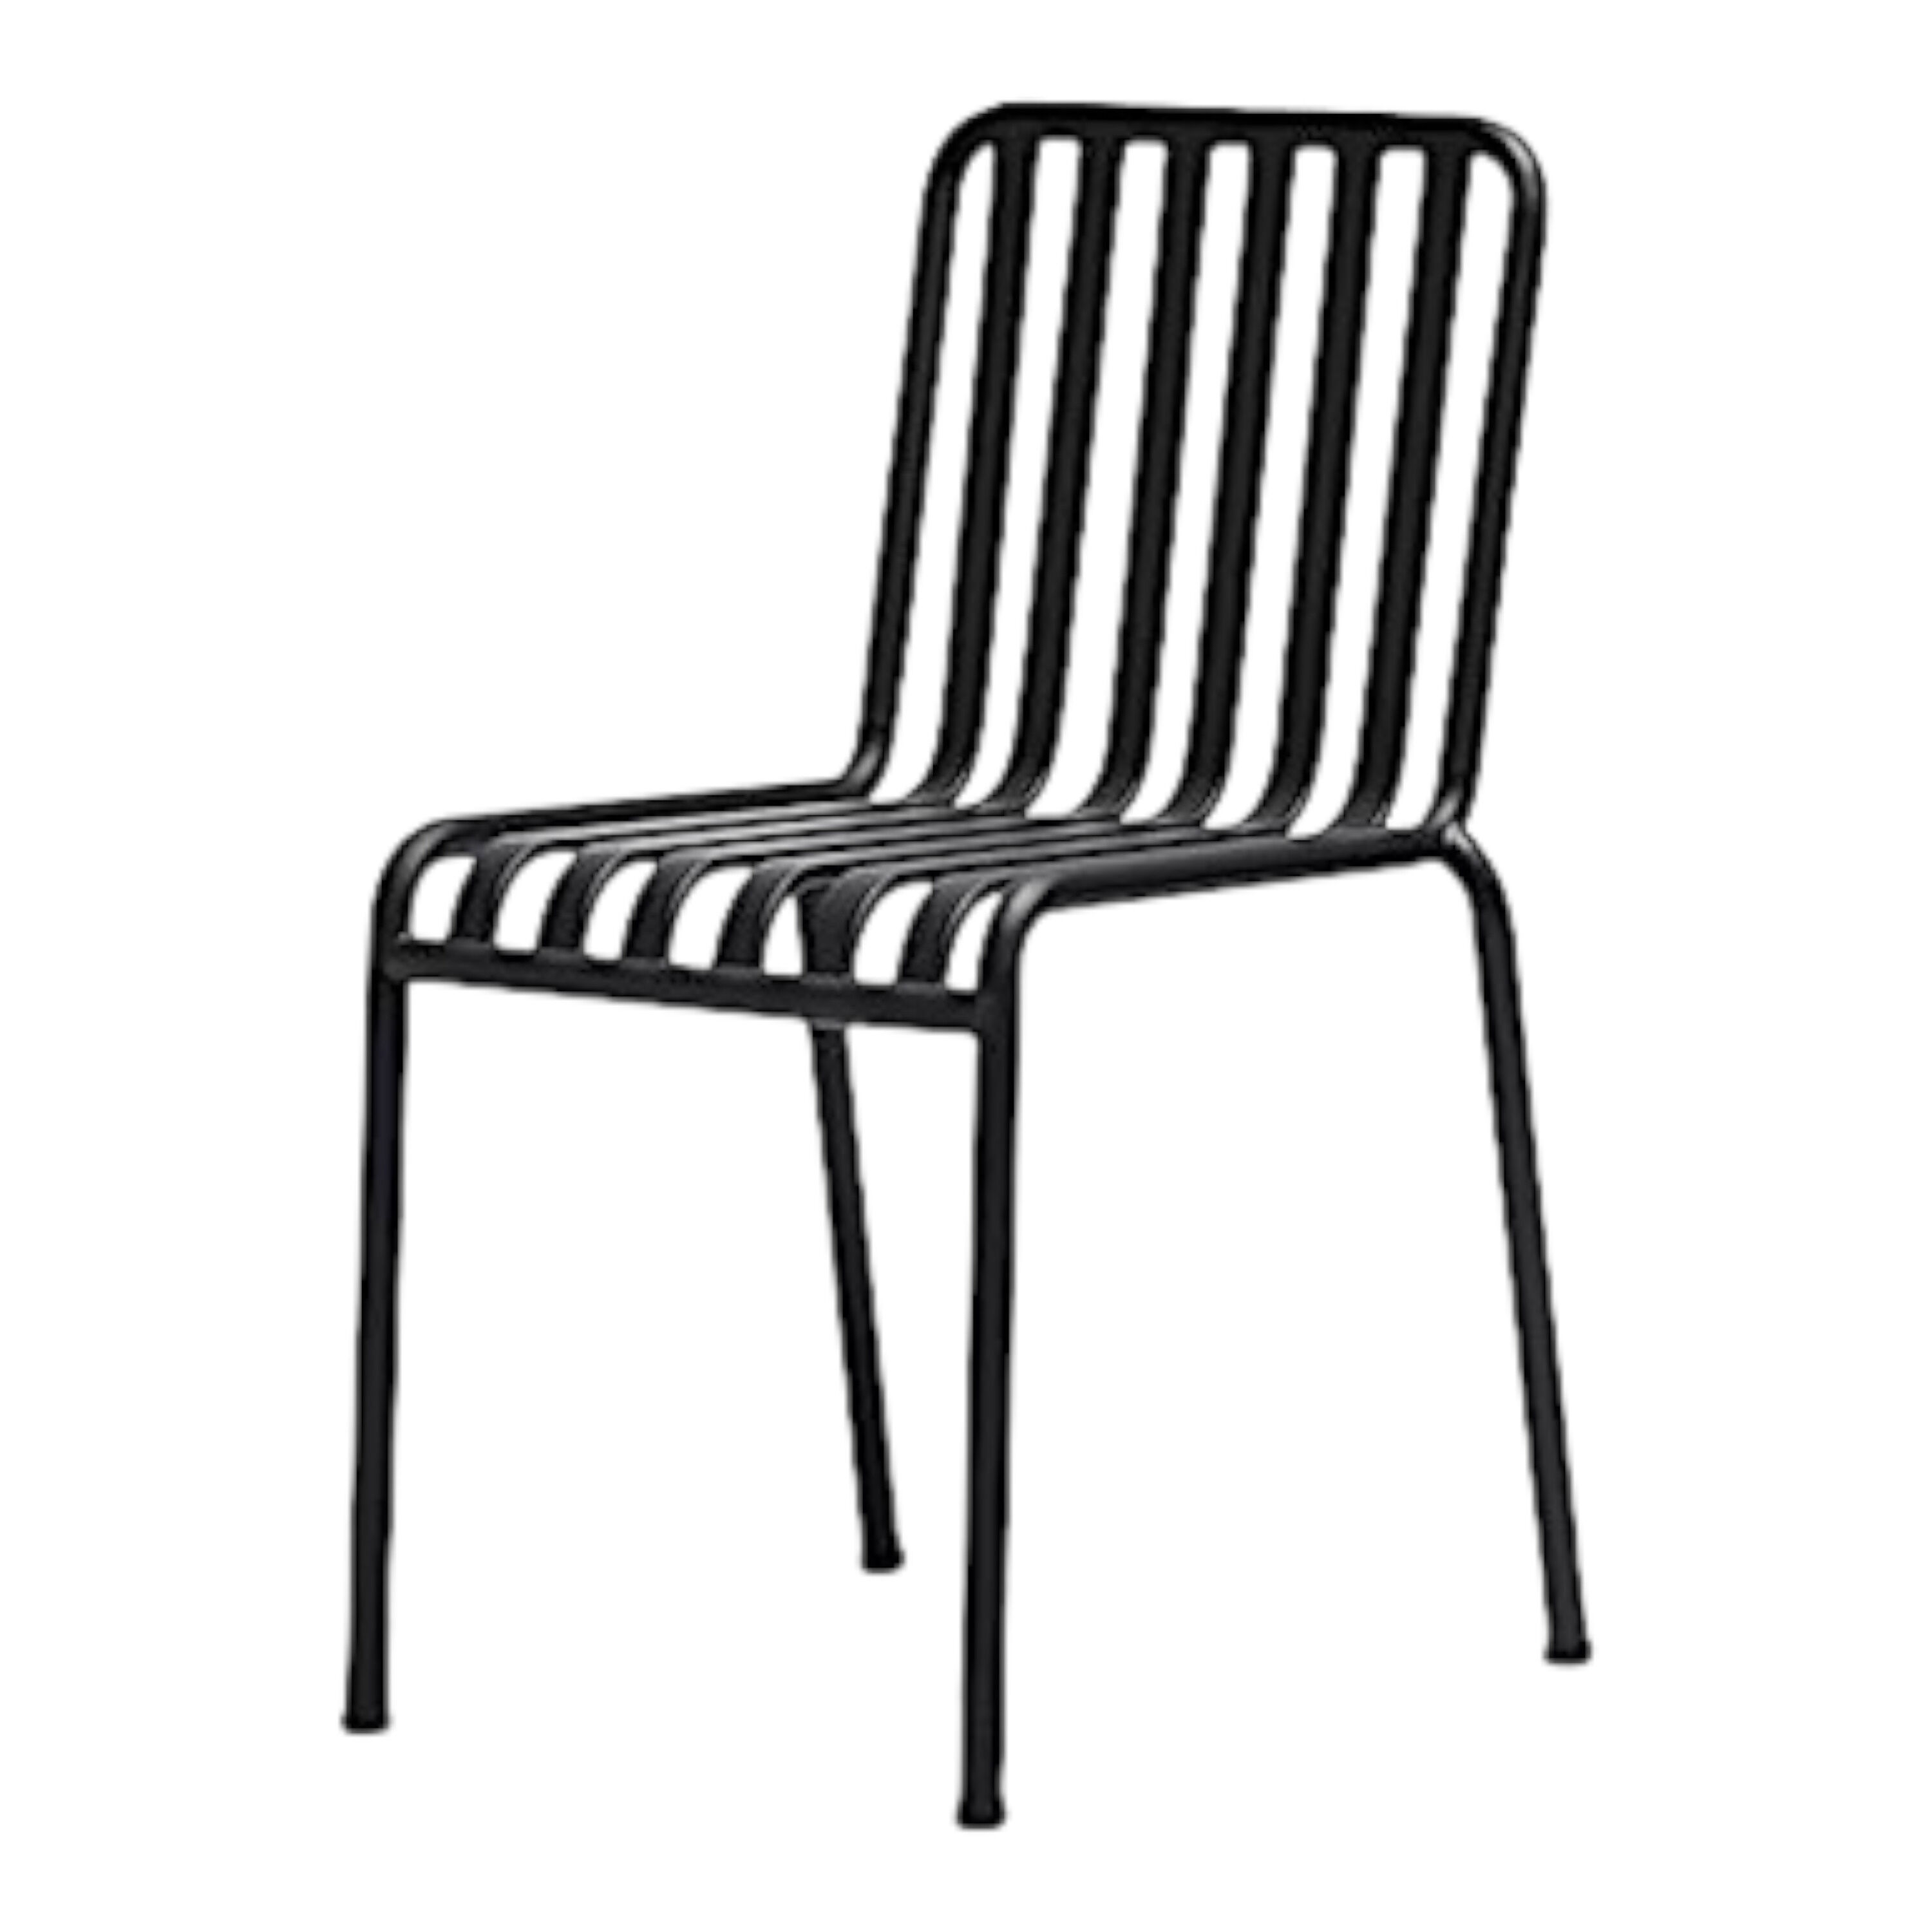 hay-stuhl-palissade-chair-stahl-anthrazit-pulverbeschichtet-inkl-sitzauflage-in-anthrazit-mf-0004201-2